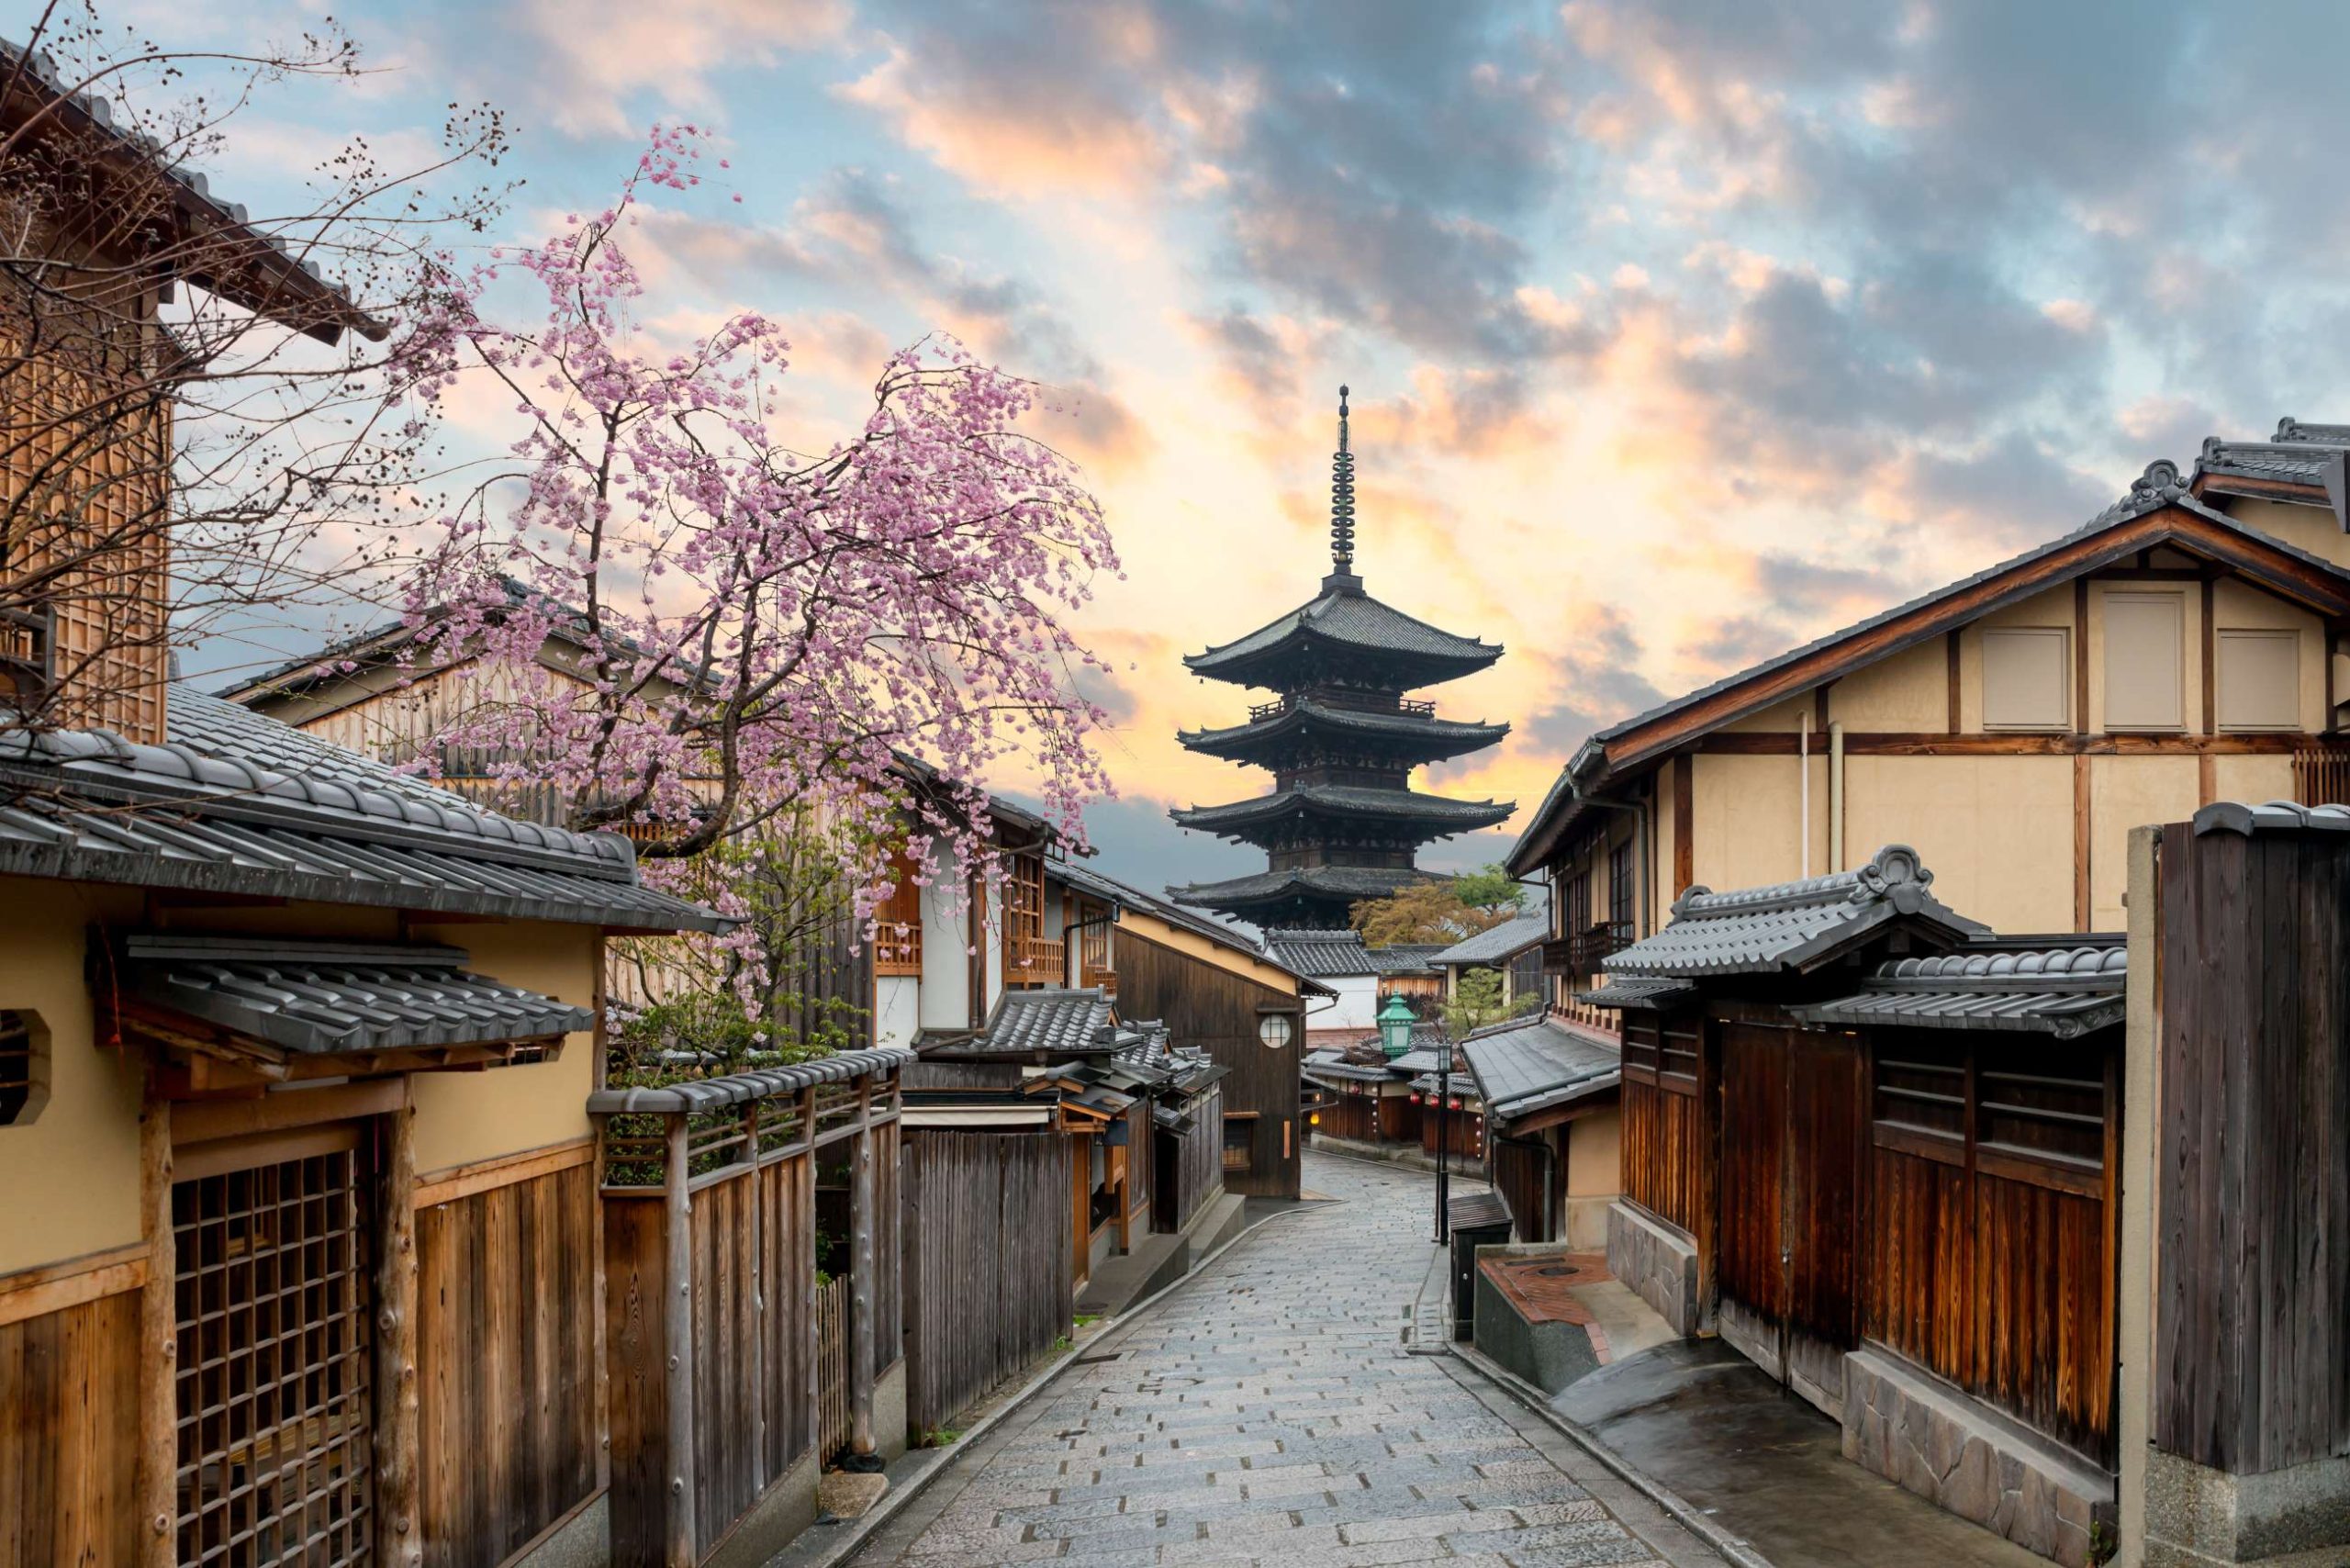 U nastavku predstavit ćemo vam 10 prekrasnih japanskih životnih lekcija koji vas mogu nadahnuti da prigrlite sretan i zdrav život.